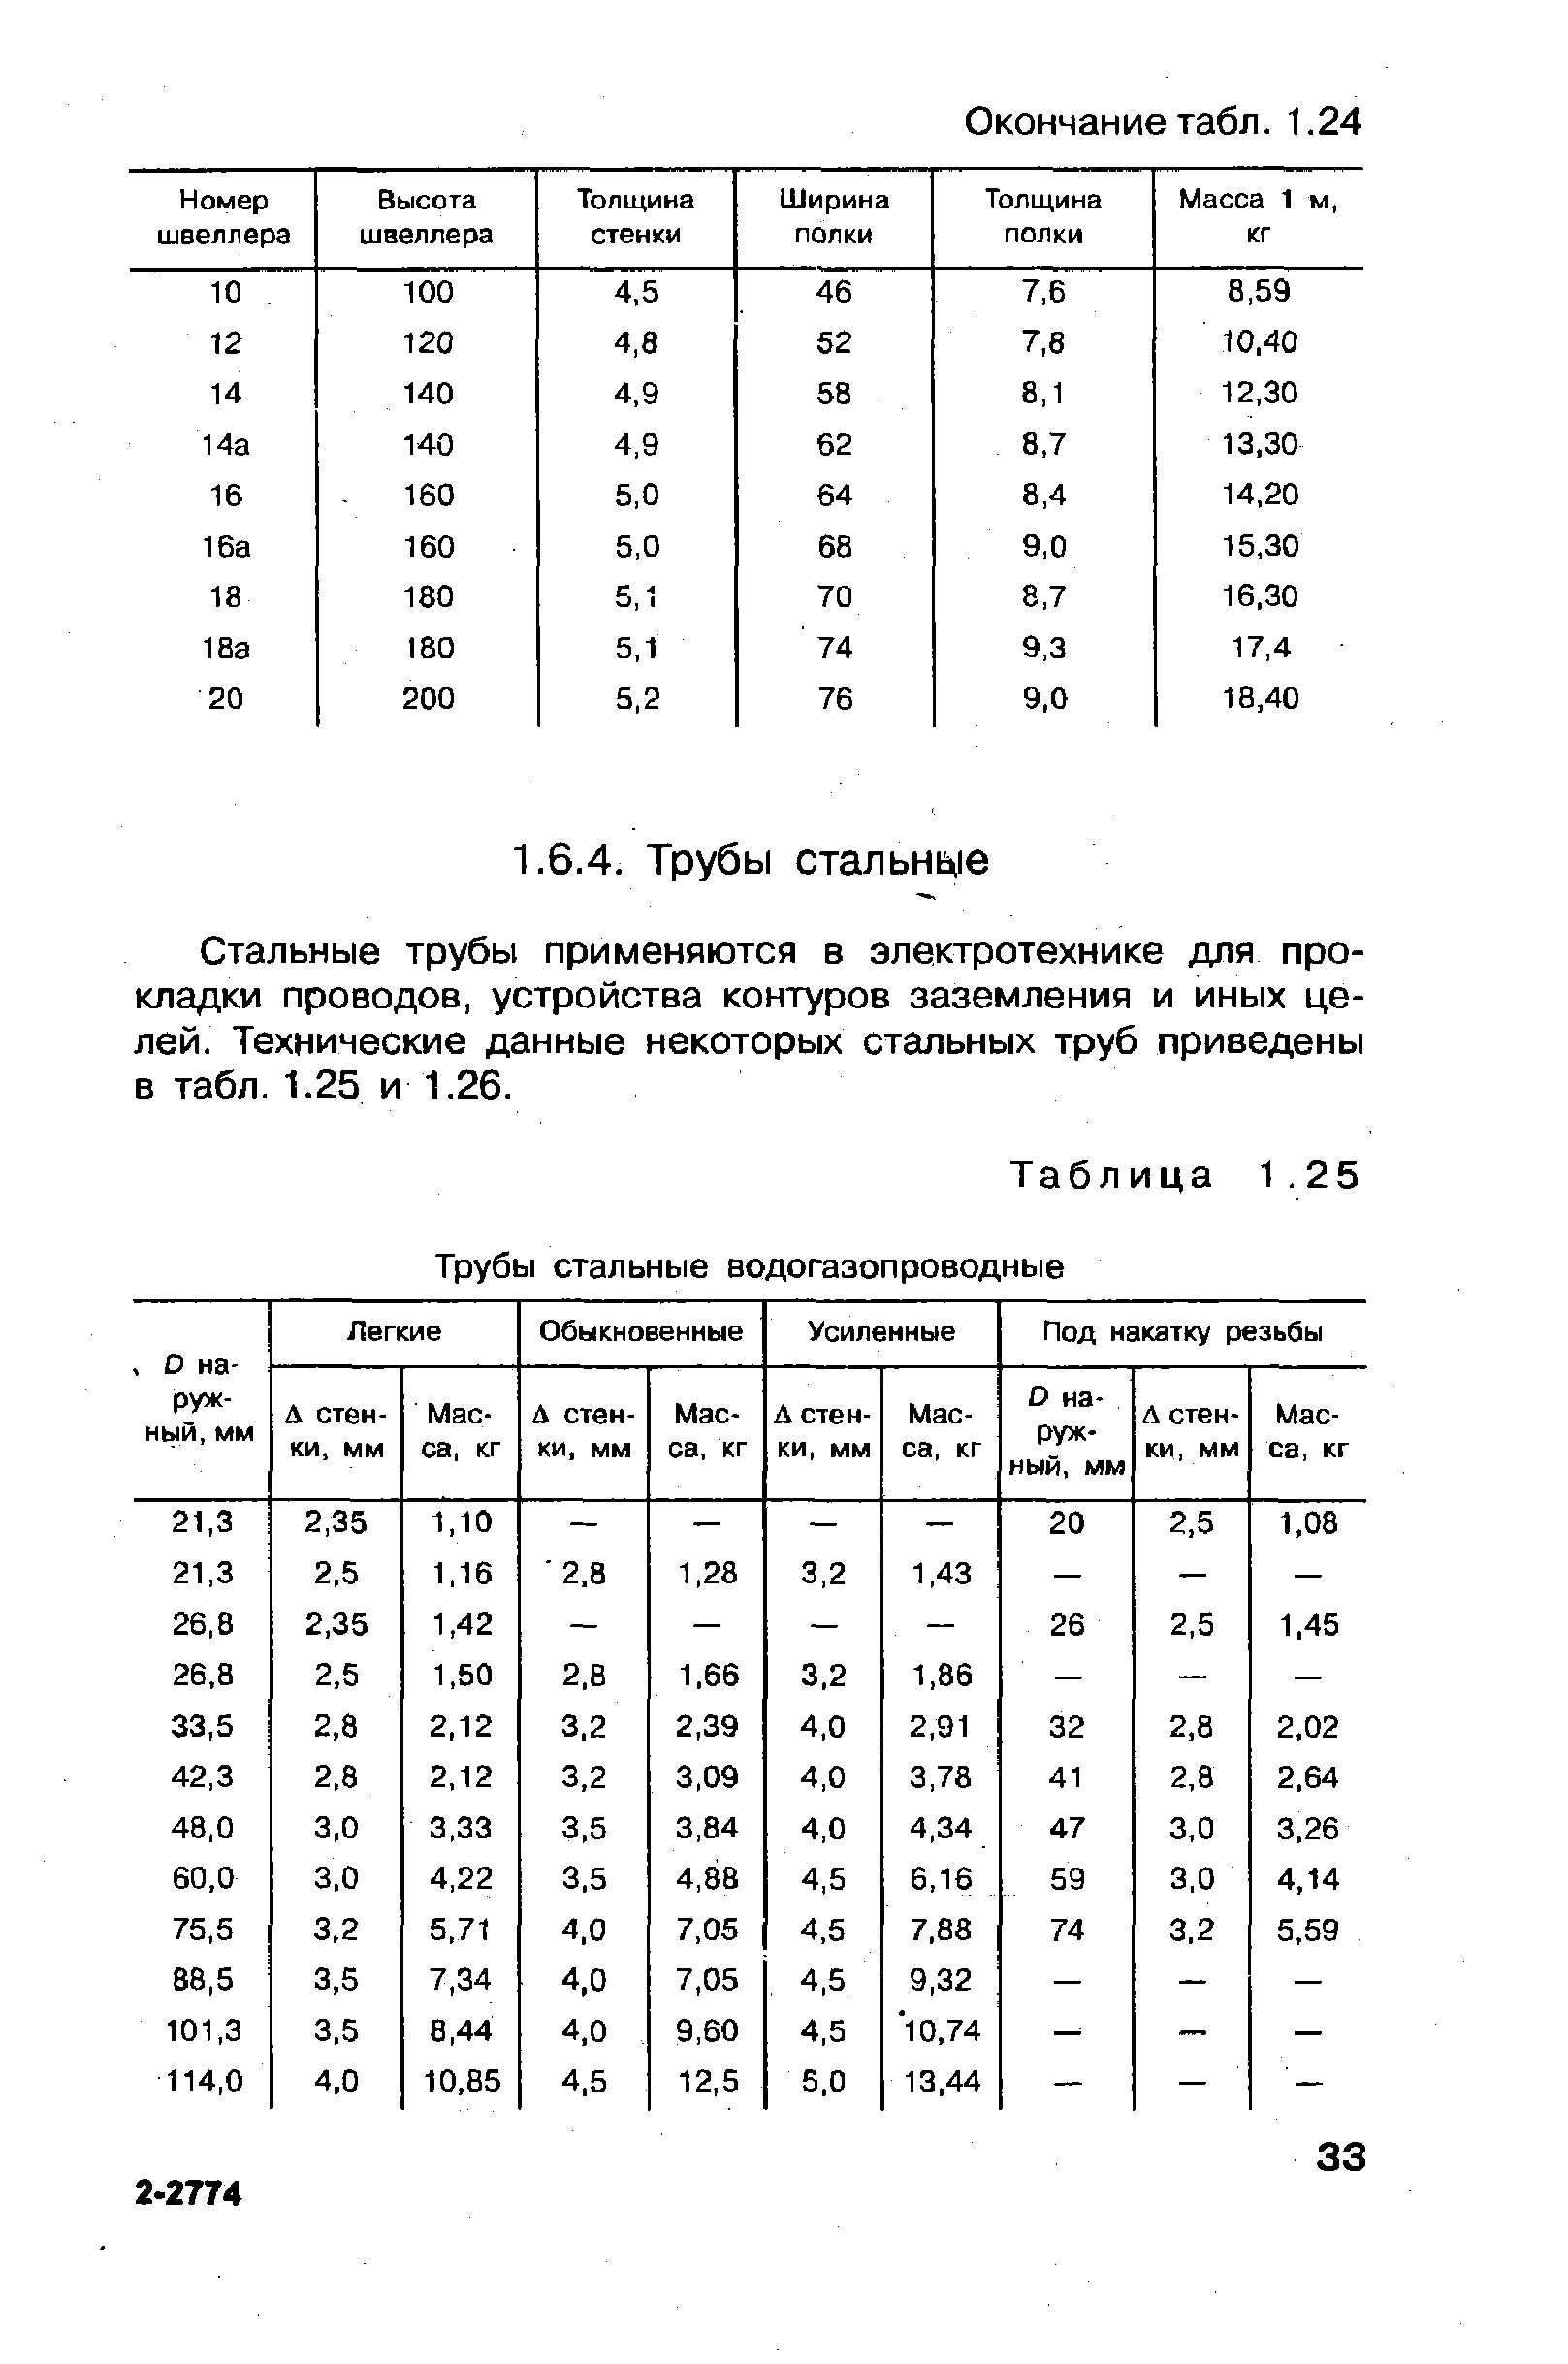 Таблица 1.25 Трубы стальные водогазопроводные
